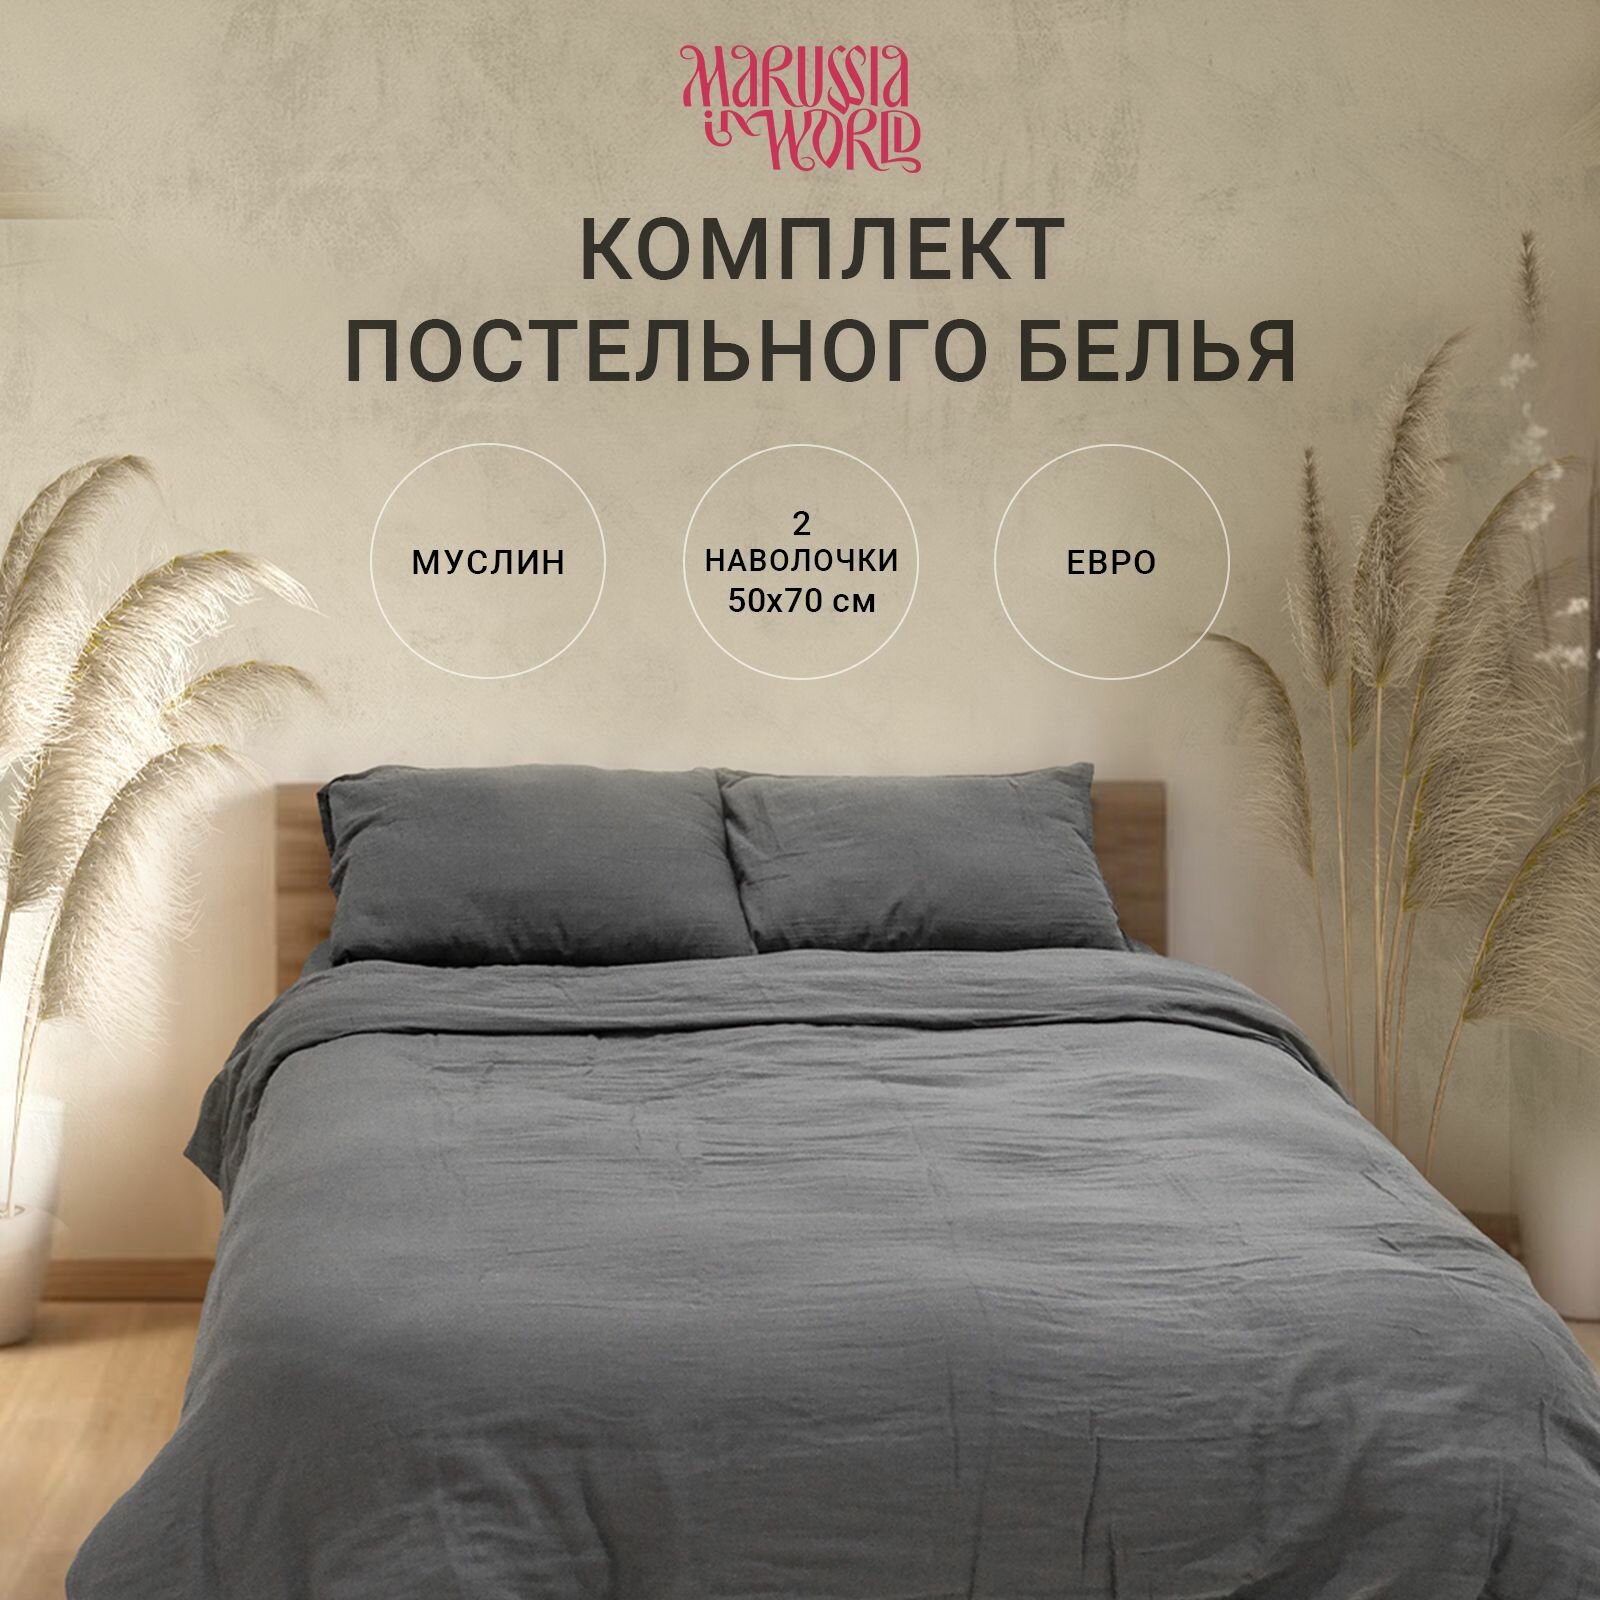 Комплект постельного белья Евро Муслин MaRUSSIA in World размер 200х220 с наволочкой 50*70 хлопок 100%